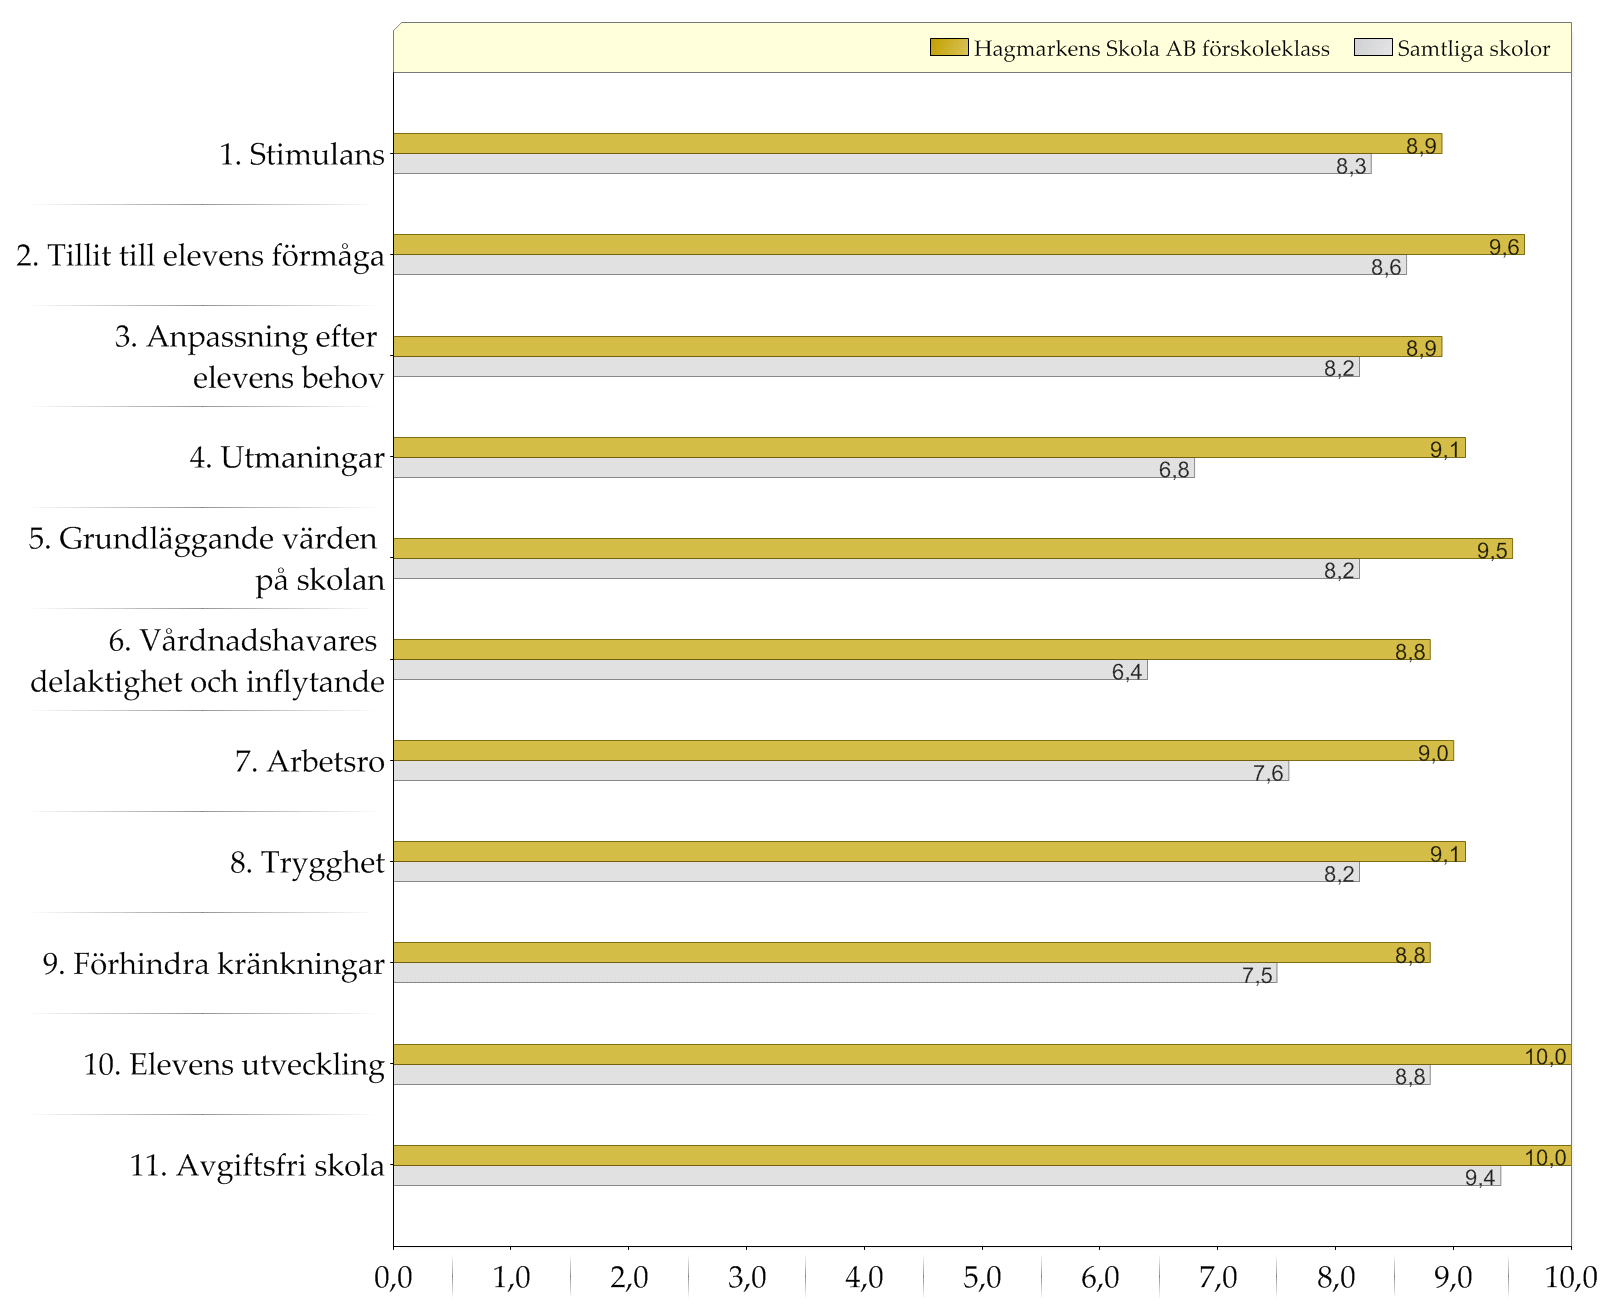 Samtliga skolor / Hagmarkens Skola AB förskoleklass. Resultat indexvärden Diagram över indexvärden (0-10).